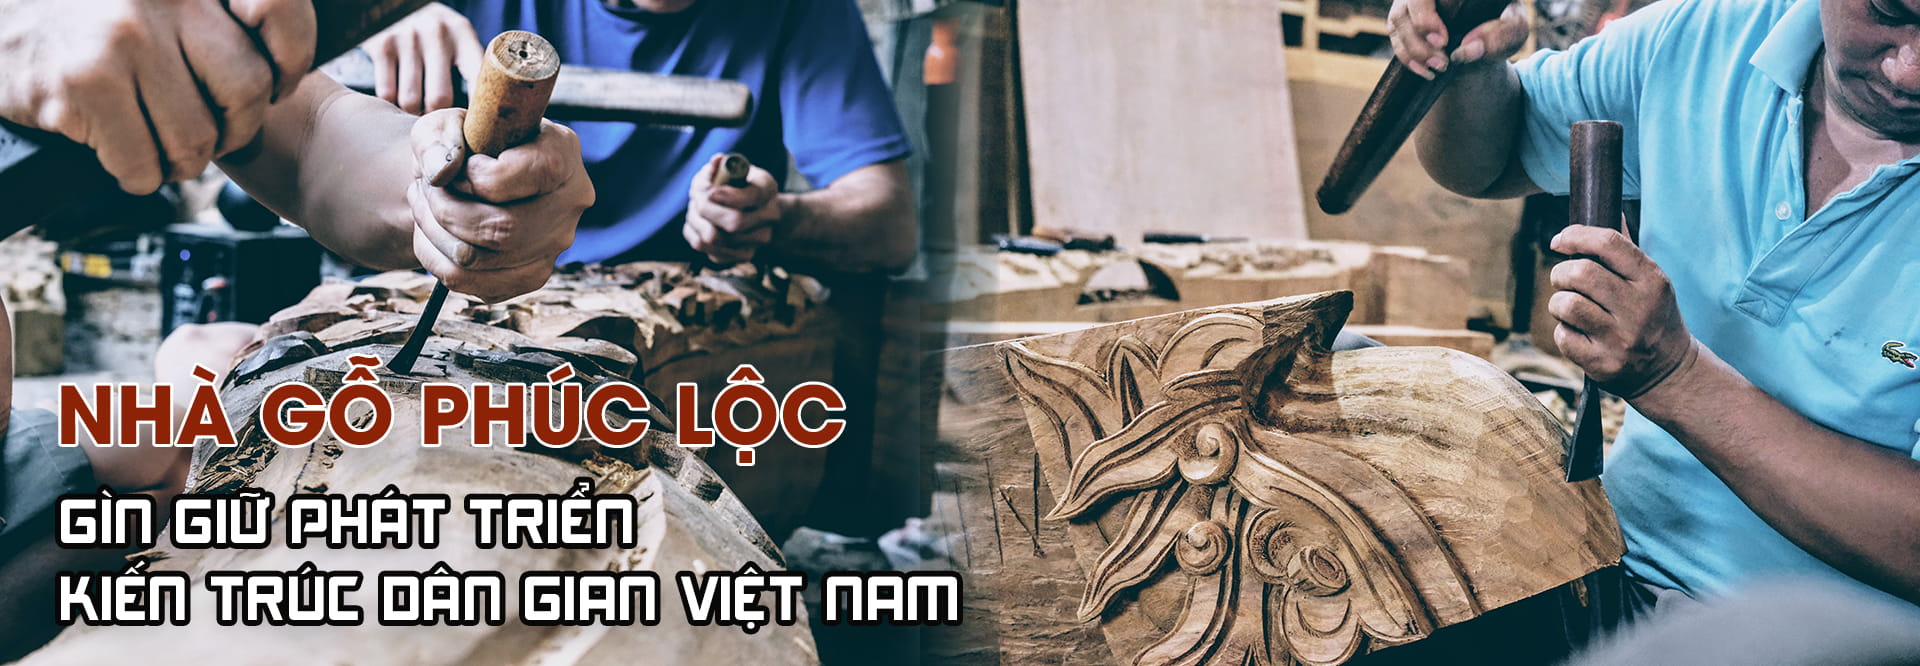 Banner Nha Go Phuc Loc 2021-3